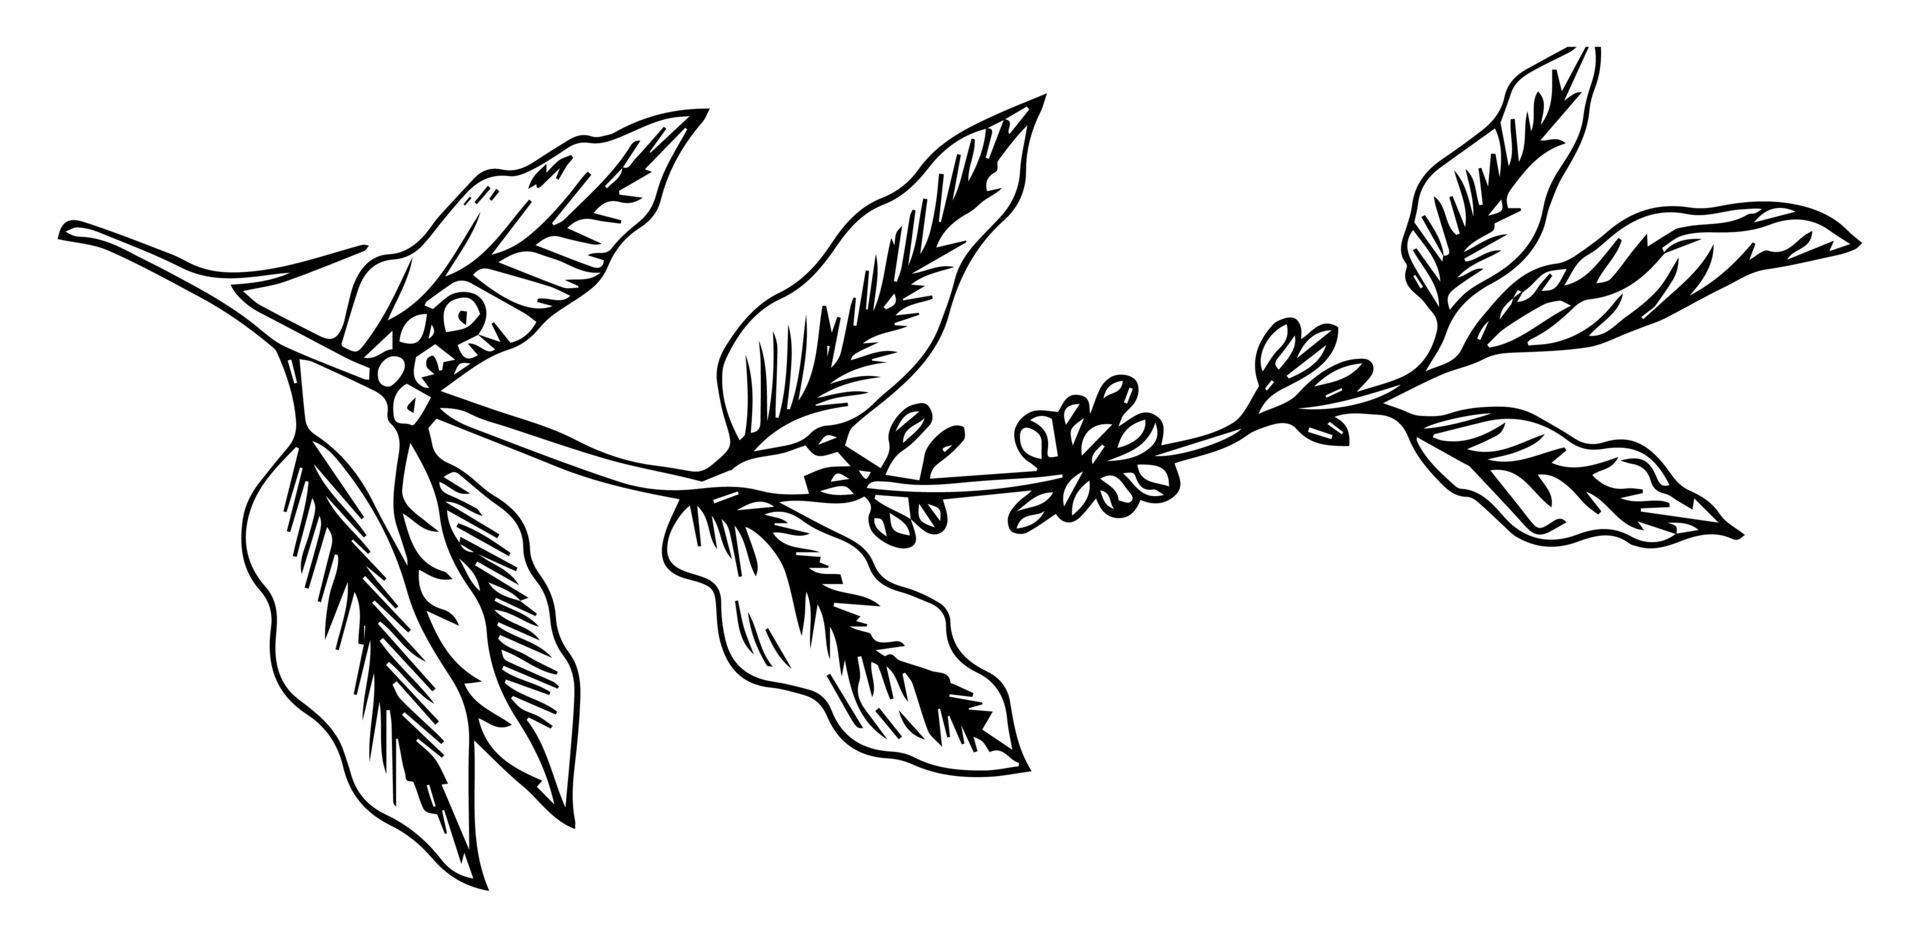 ramo di albero del caffè grande vintage disegnato a mano con bacche e foglie di caffè. illustrazione. decorazione di una caffetteria o di una caffetteria. matita disegnata in stile incisione vintage. su sfondo bianco vettore